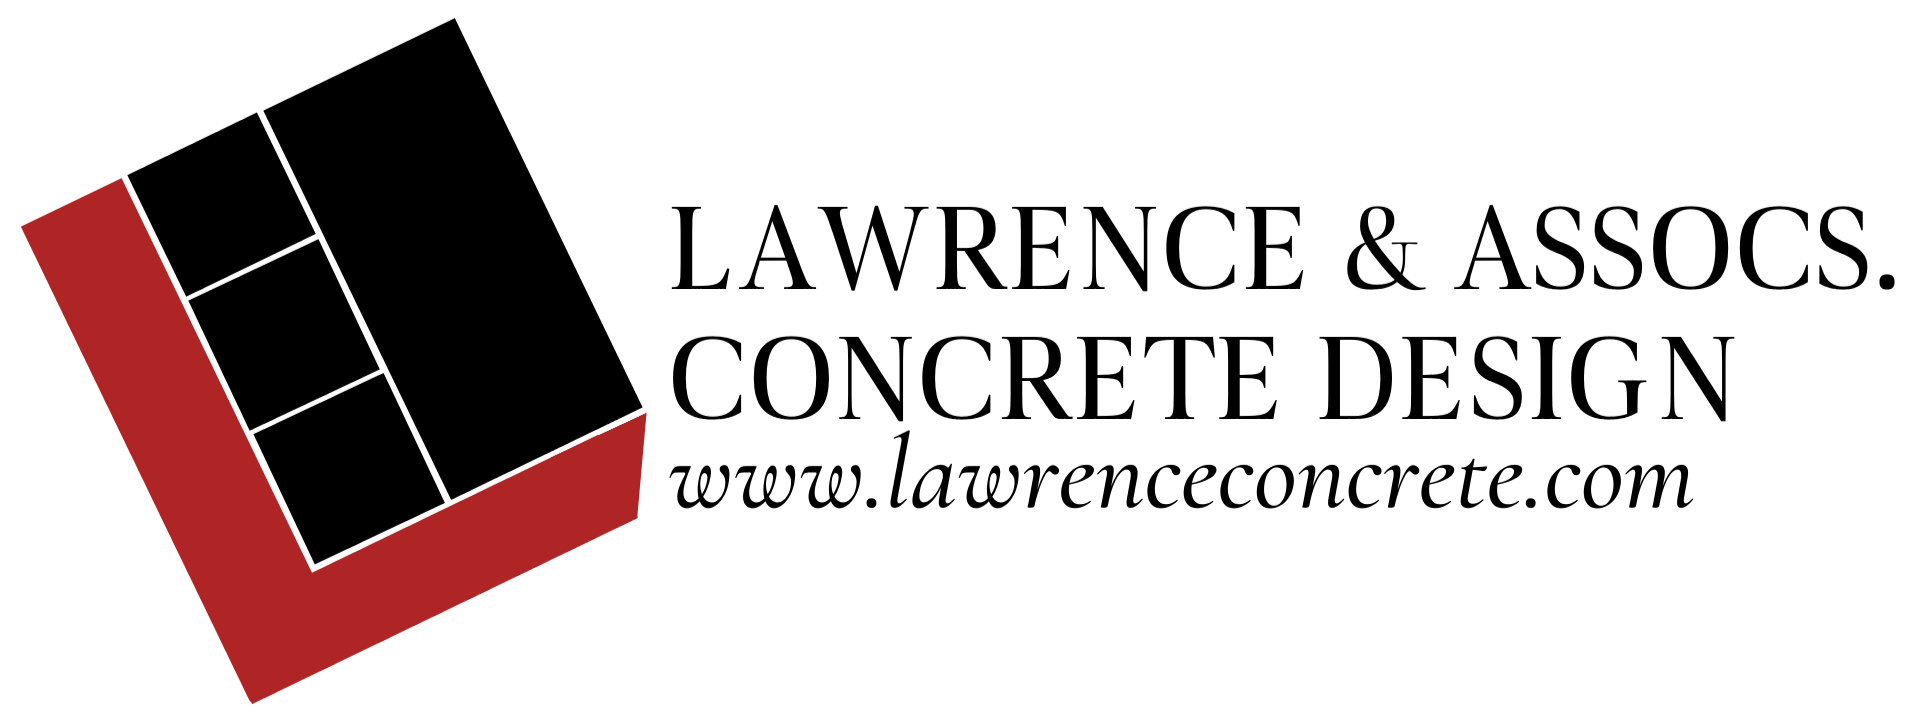 Lawrence & Assocs. Concrete Design louisville best concrete company